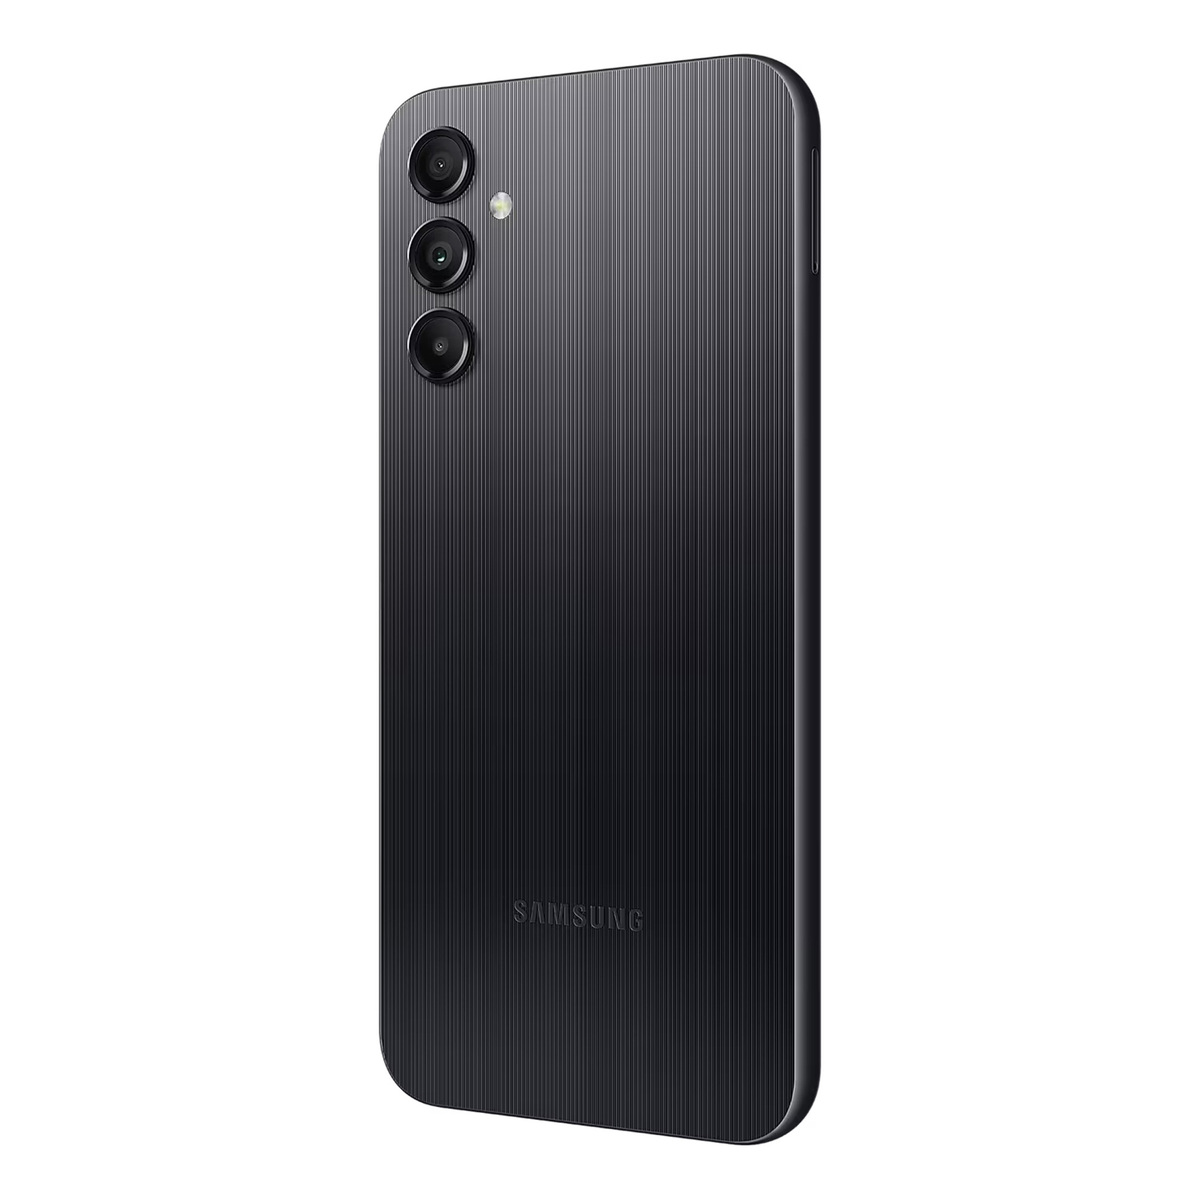 Samsung Galaxy A14 Dual SIM 4G Smartphone, 6 GB RAM, 64 GB Storage, Black